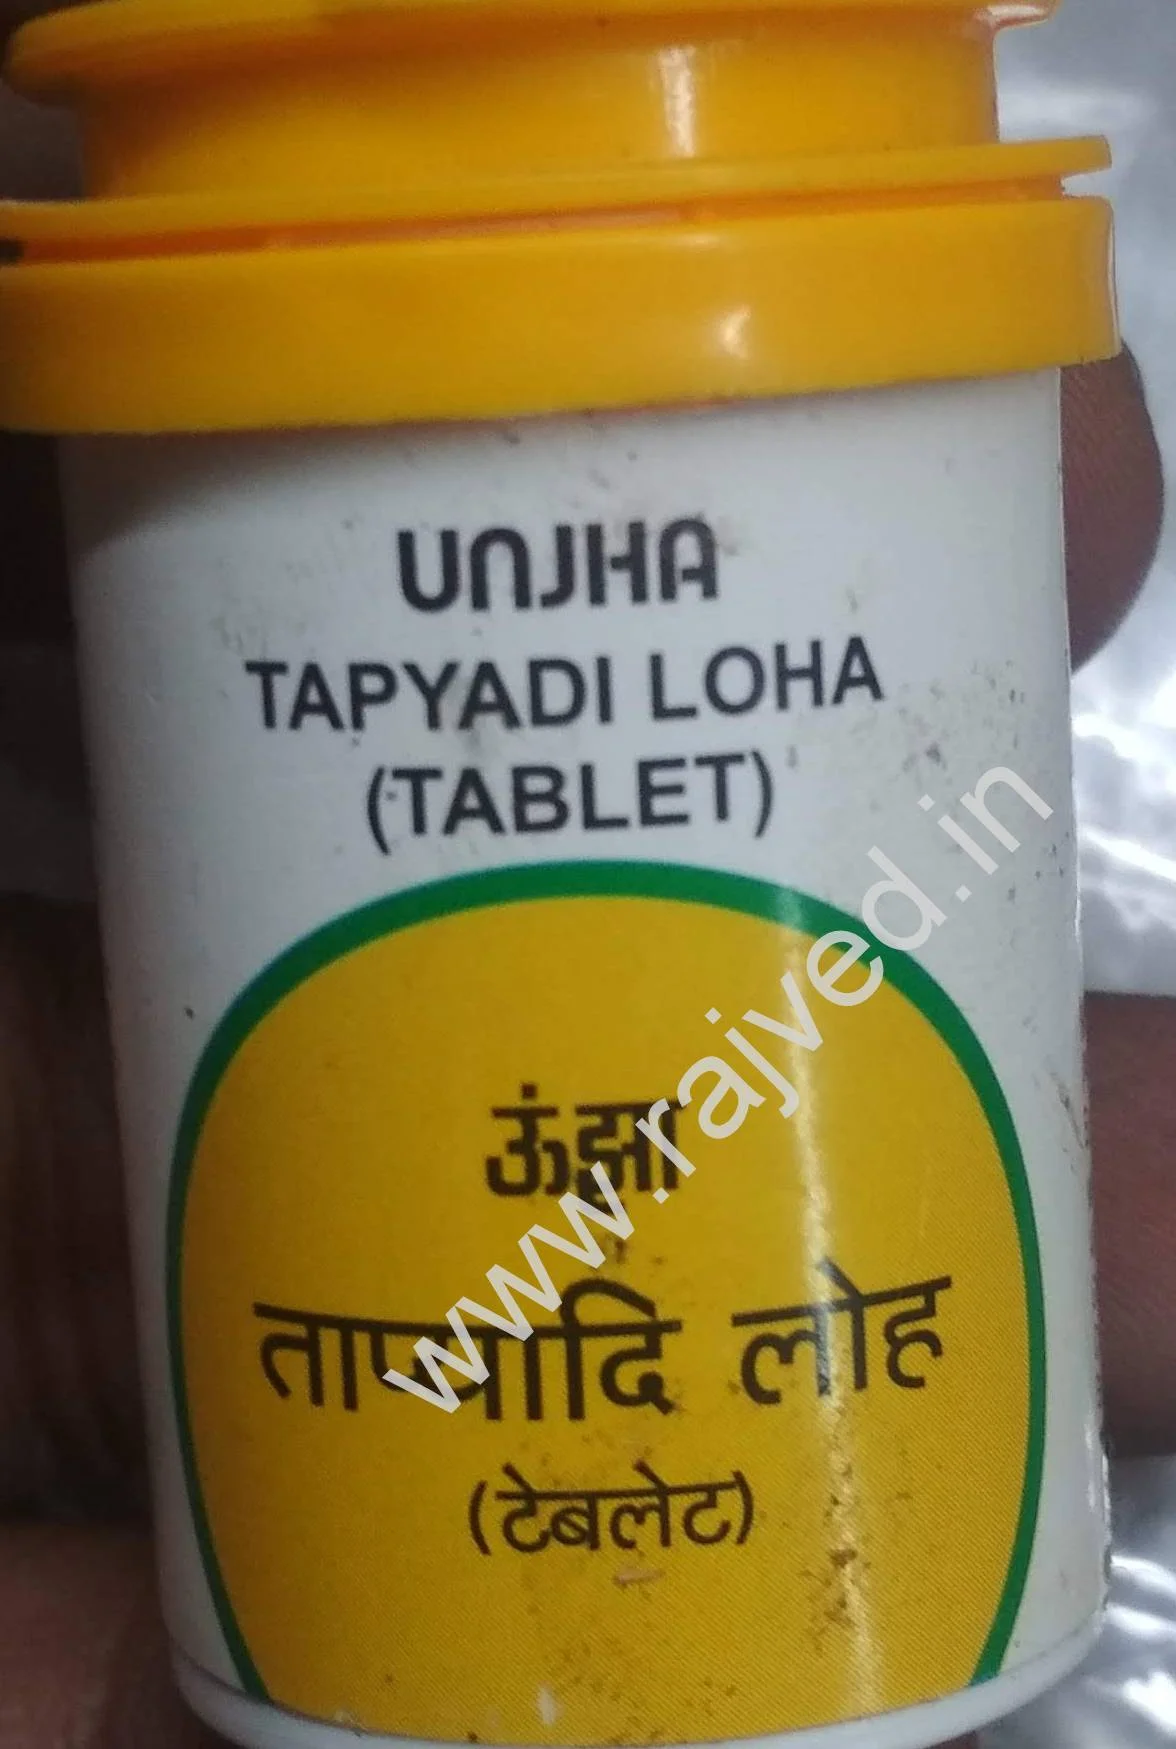 tapyadi loha 1000 tablet upto 20% off free shipping the unjha pharmacy